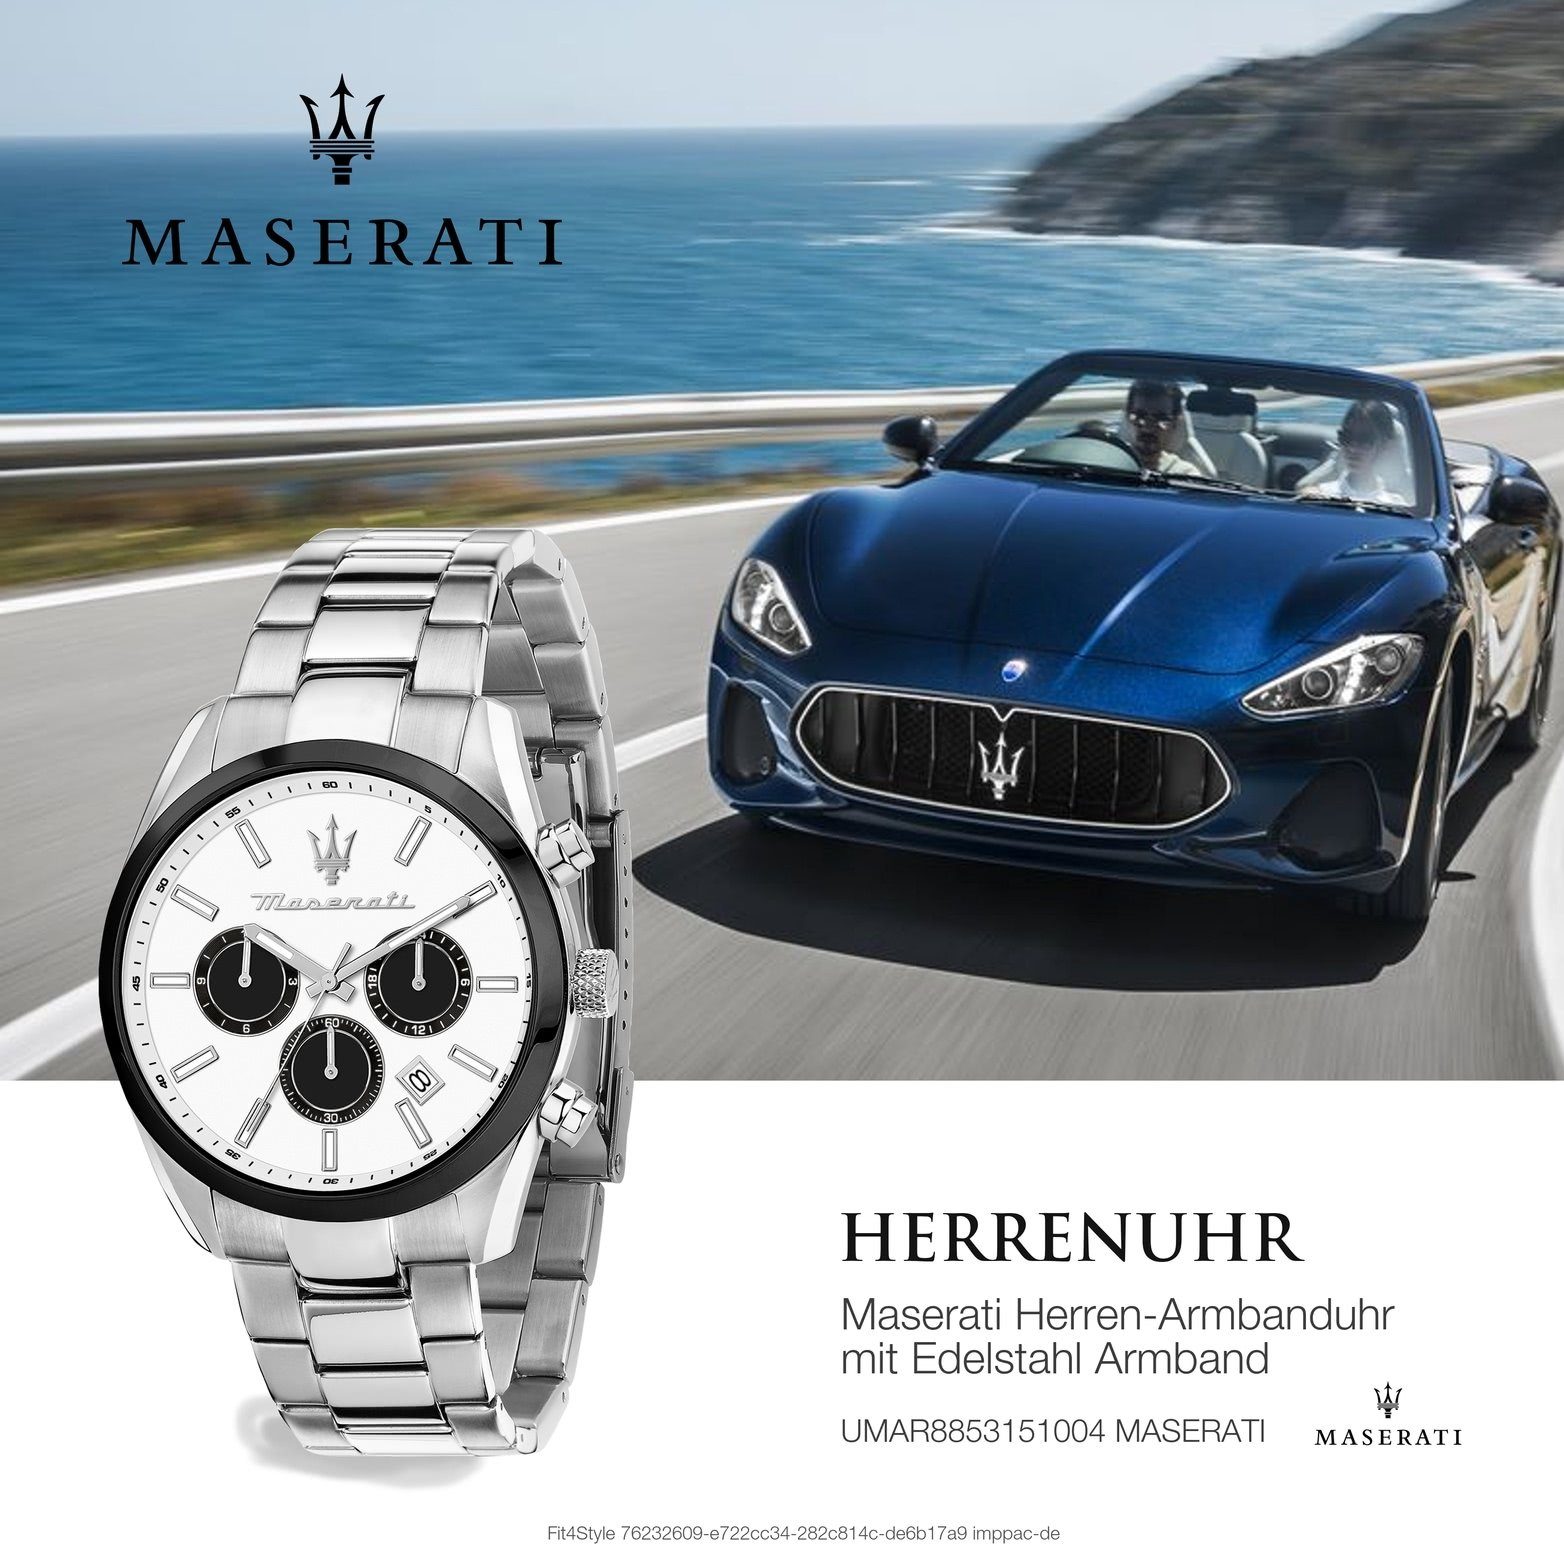 Herrenuhr Attrazione, 43mm) Edelstahlarmband, Maserati groß MASERATI Herrenuhr weiß Multifunktionsuhr (ca. rundes Gehäuse,